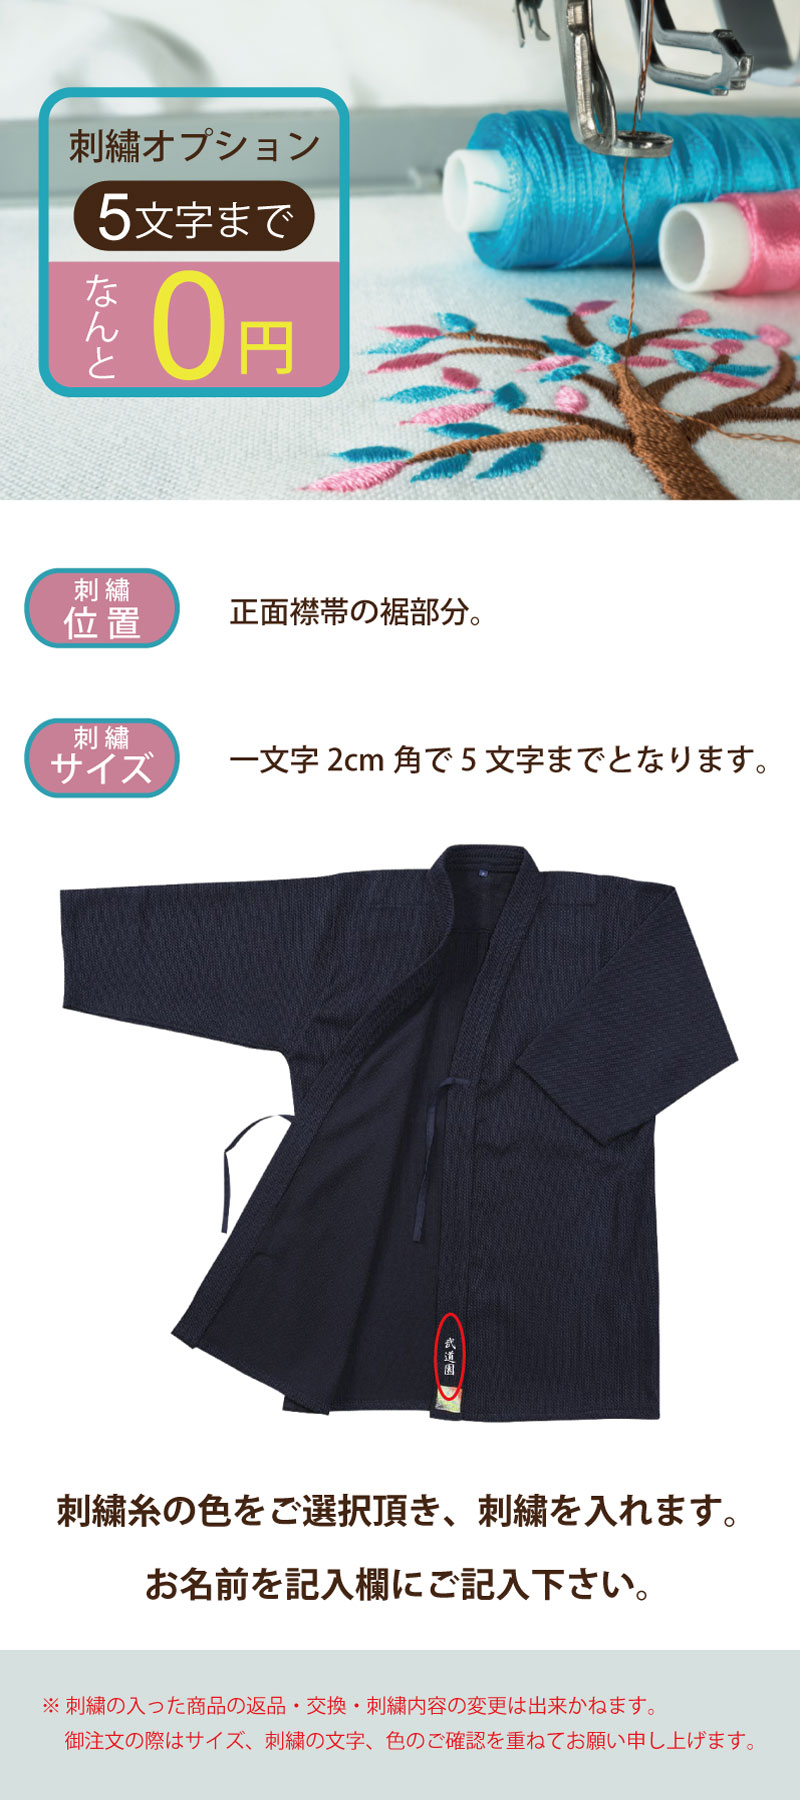 剣道 剣道着「閃」HIRAMEKI NEXT ポリエステル製 紺色 1L〜5号 刺繍